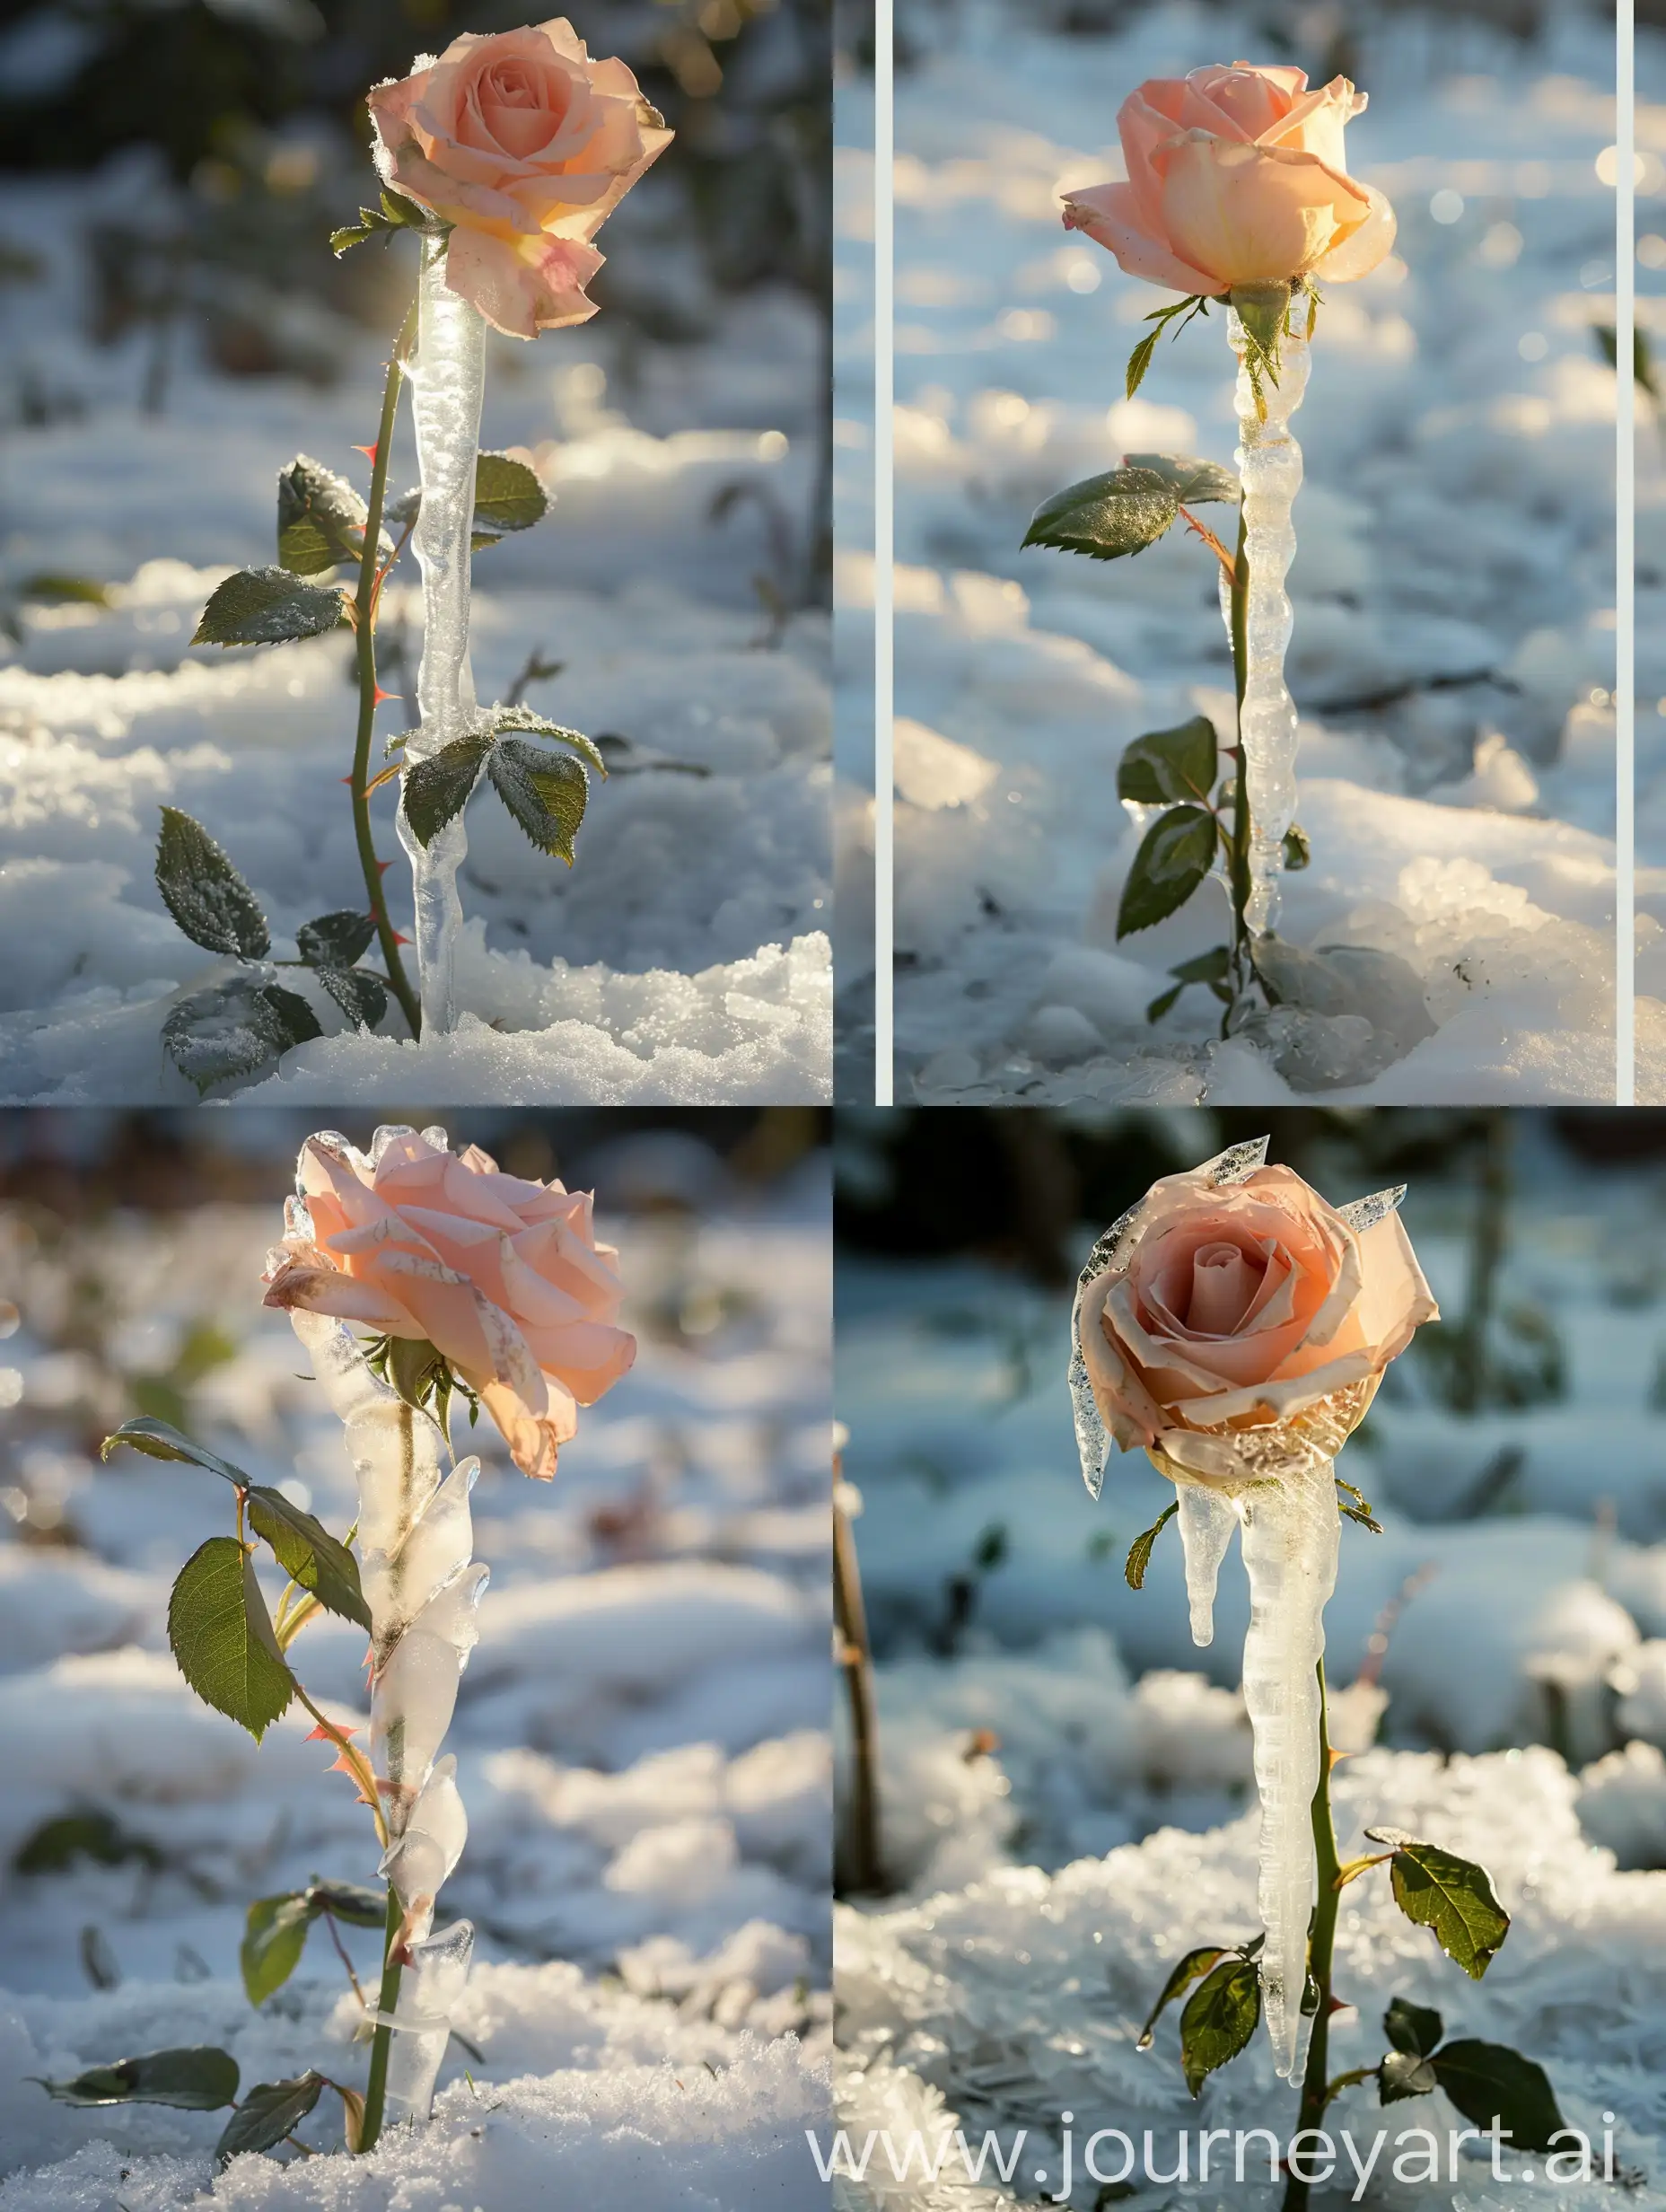 雪地上有一个一朵竖着生长的浅粉色玫瑰被冰块包裹着，阳光照射在冰块上，光线柔和